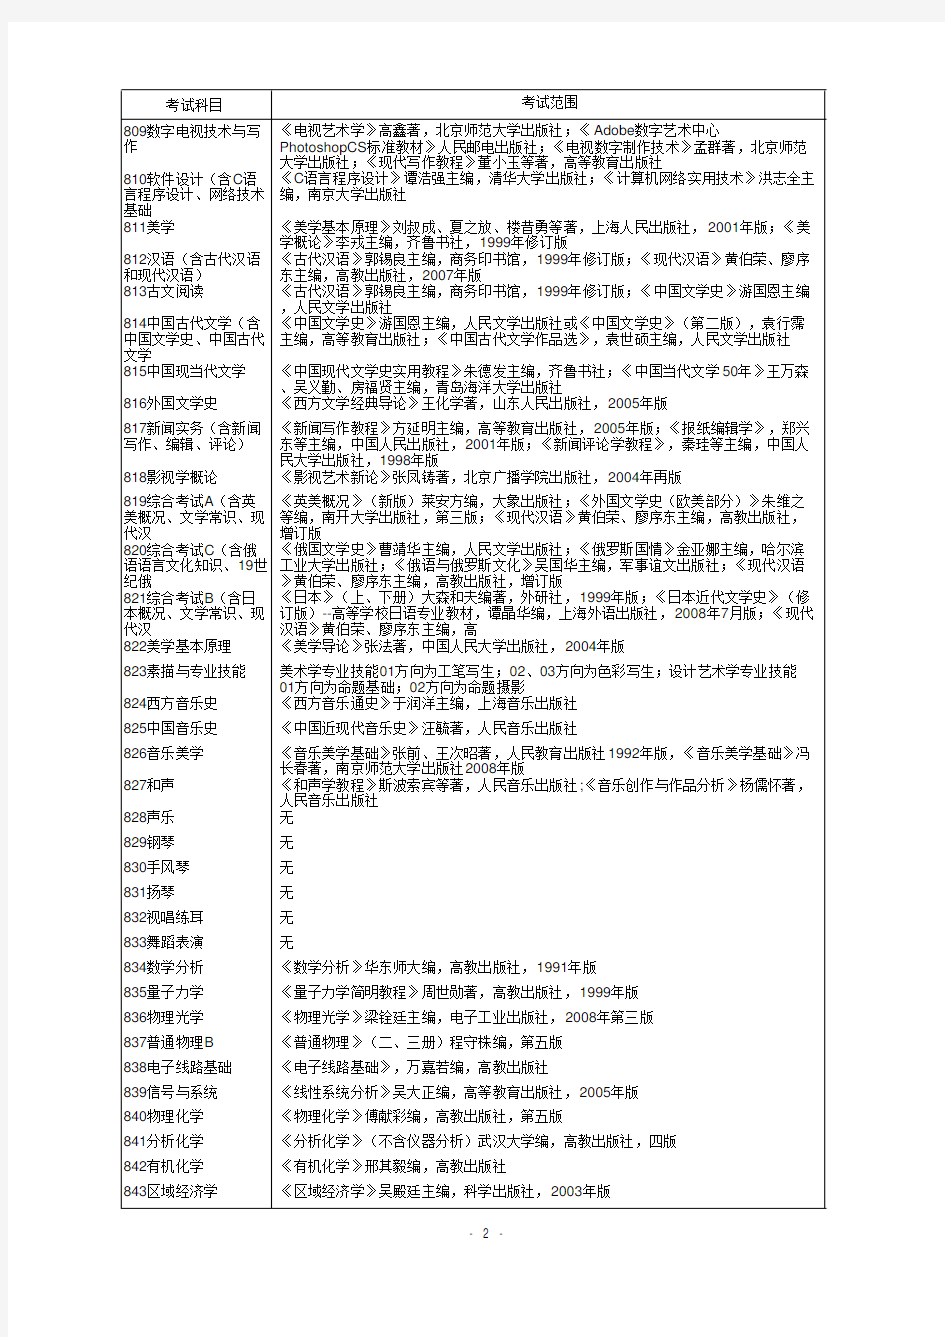 考试科目考试范围340艺术基础《艺术学概论》彭吉象著北京大学出版社